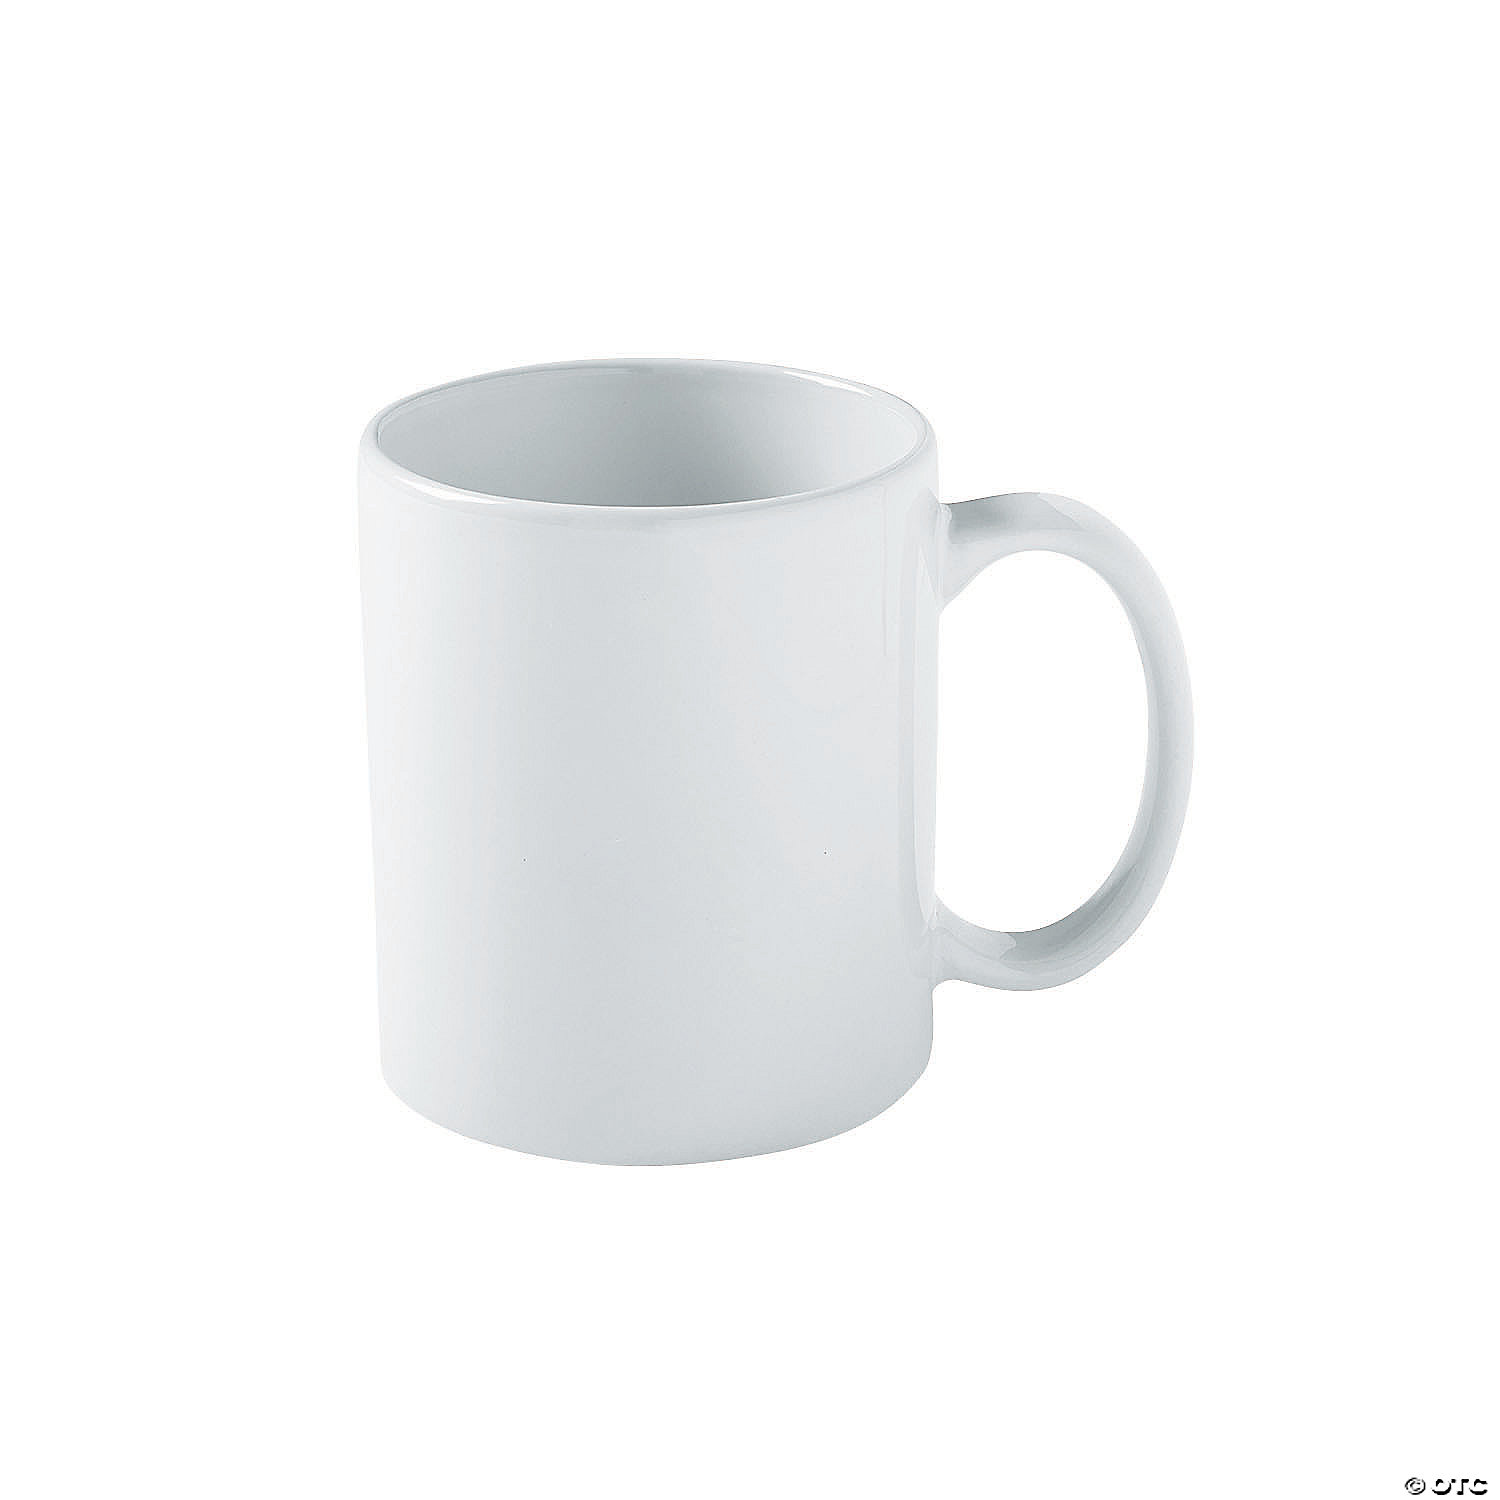 IT Code Works NEW White Tea Coffee Mug 11 ozWellcoda 